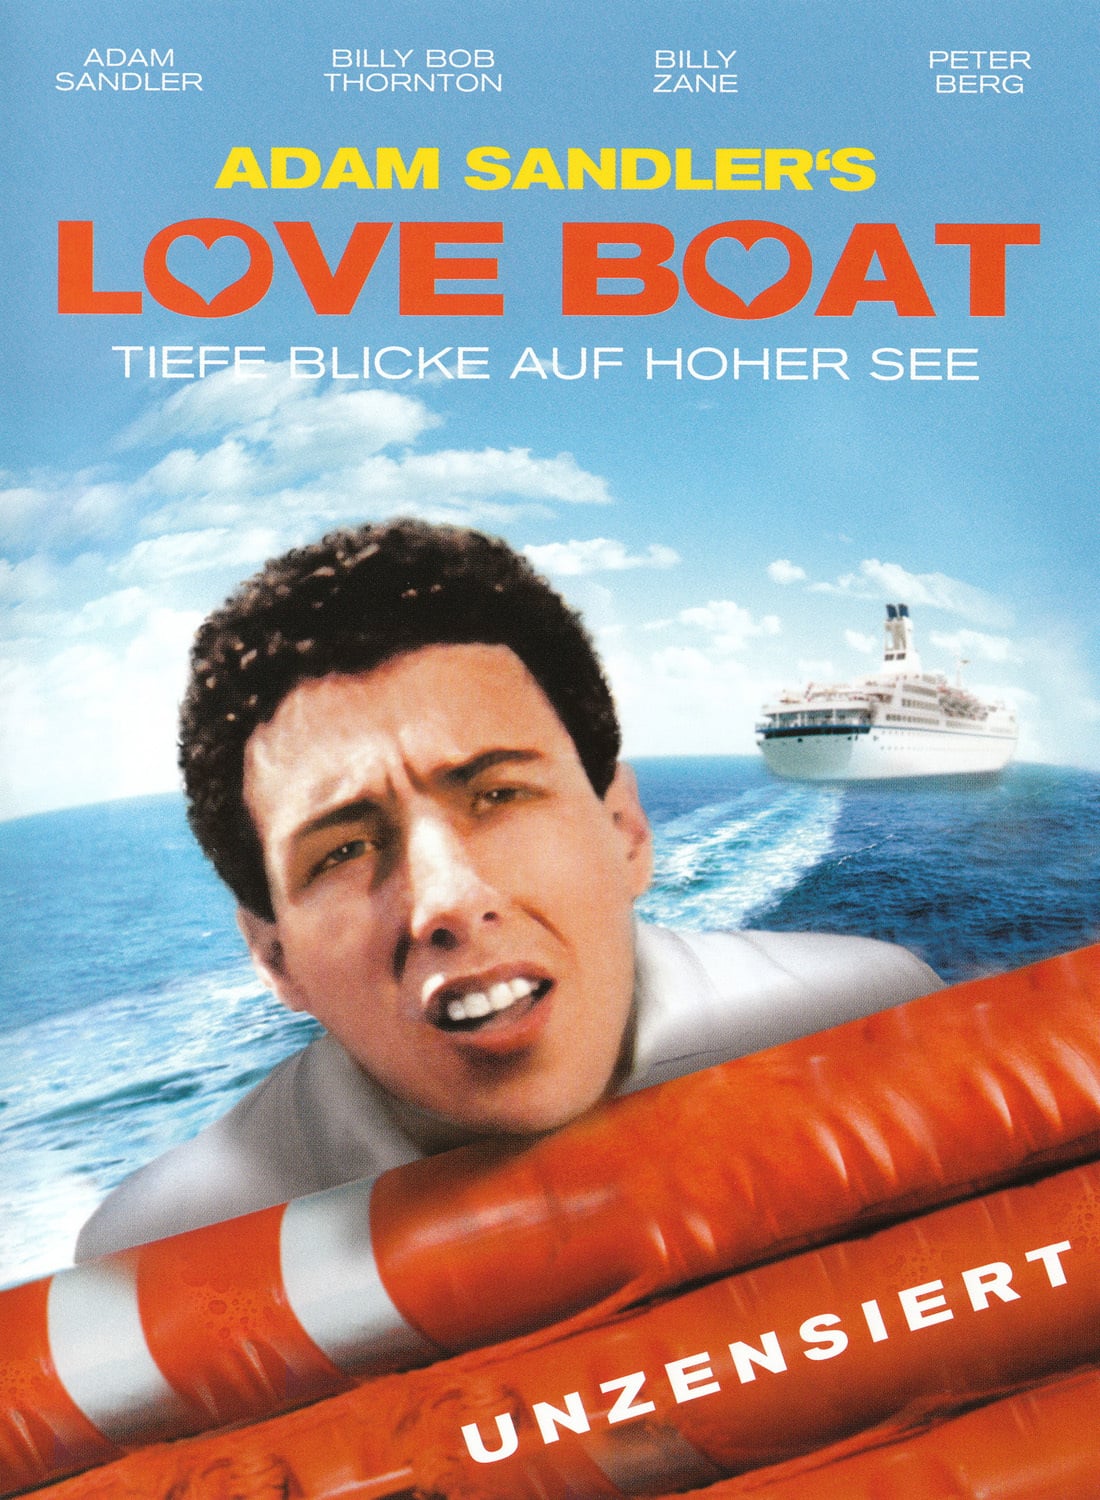 Plakat von "Adam Sandler's Love Boat"